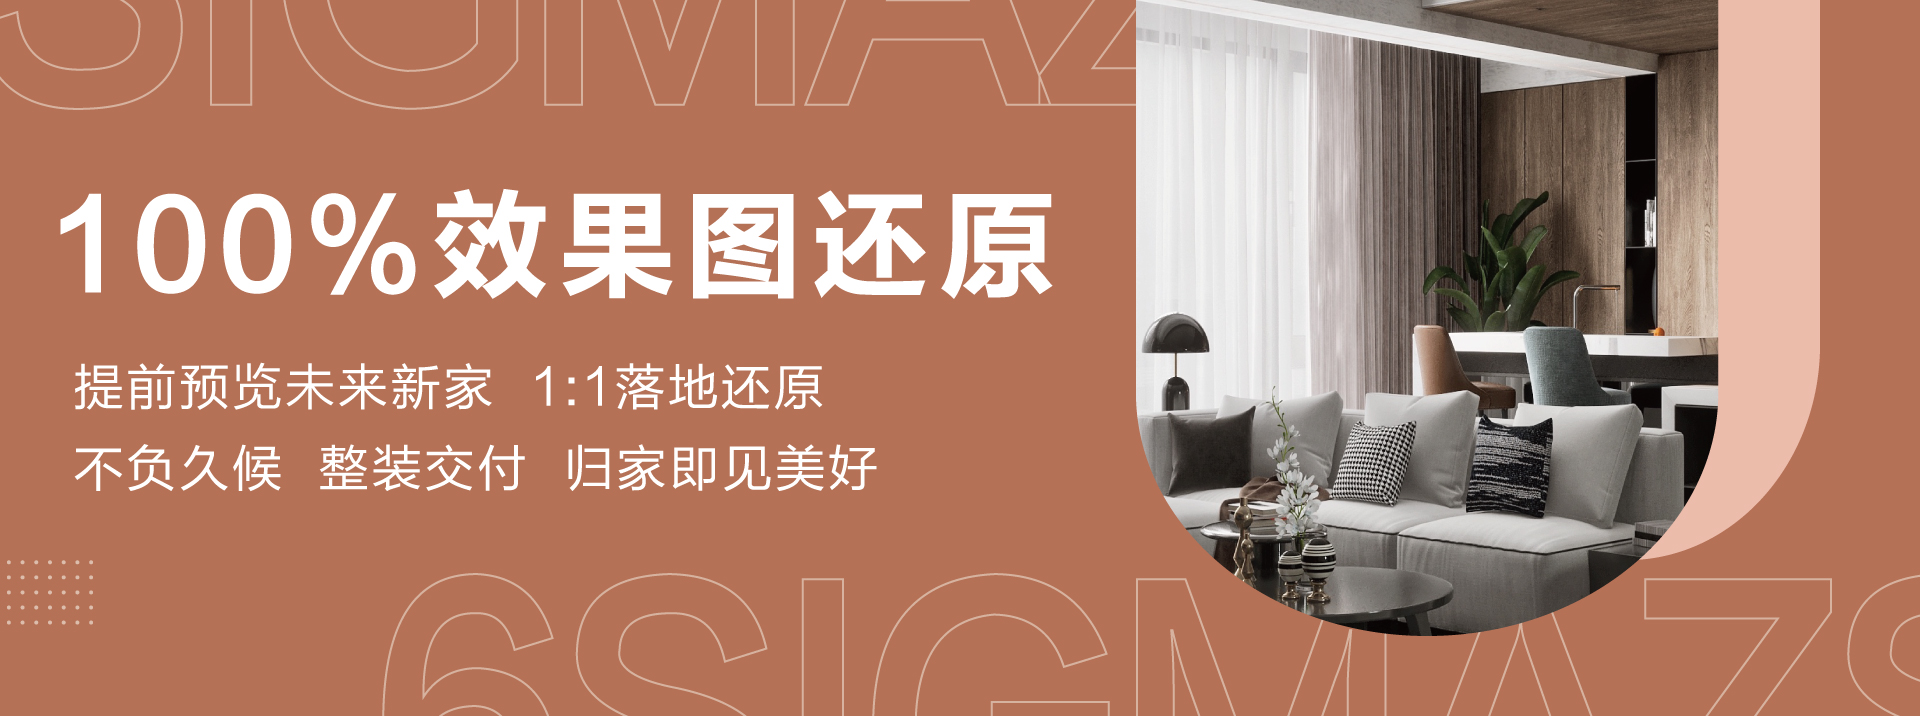 美女黄网站出水六西格玛装饰活动海报